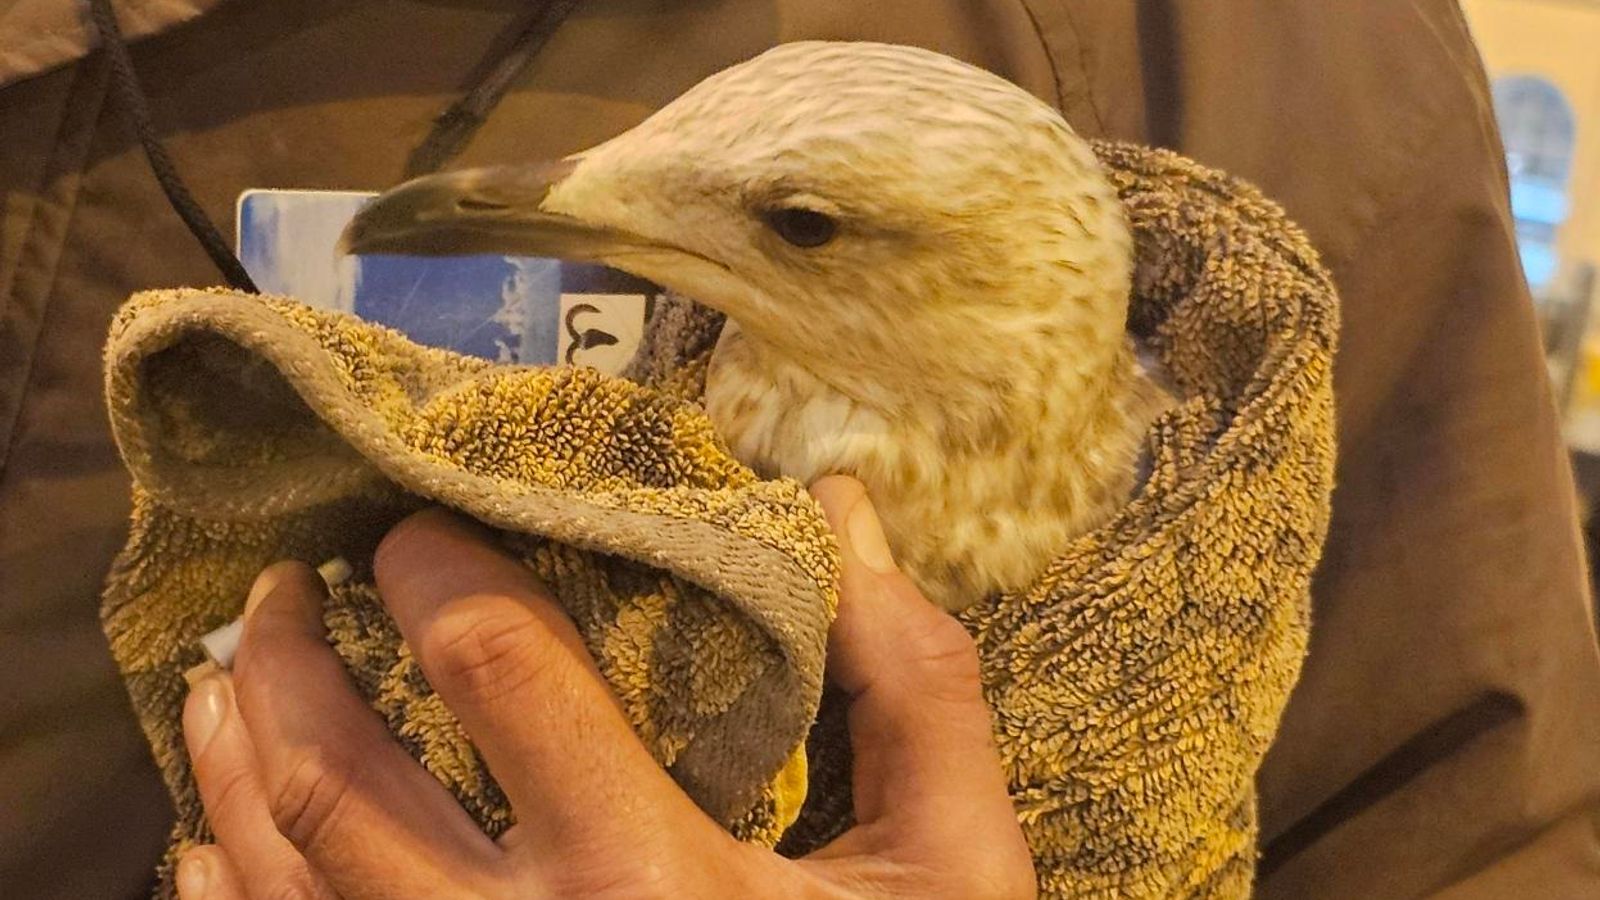 Престъпна птица причини хаос при пътуване на гара Брайтън